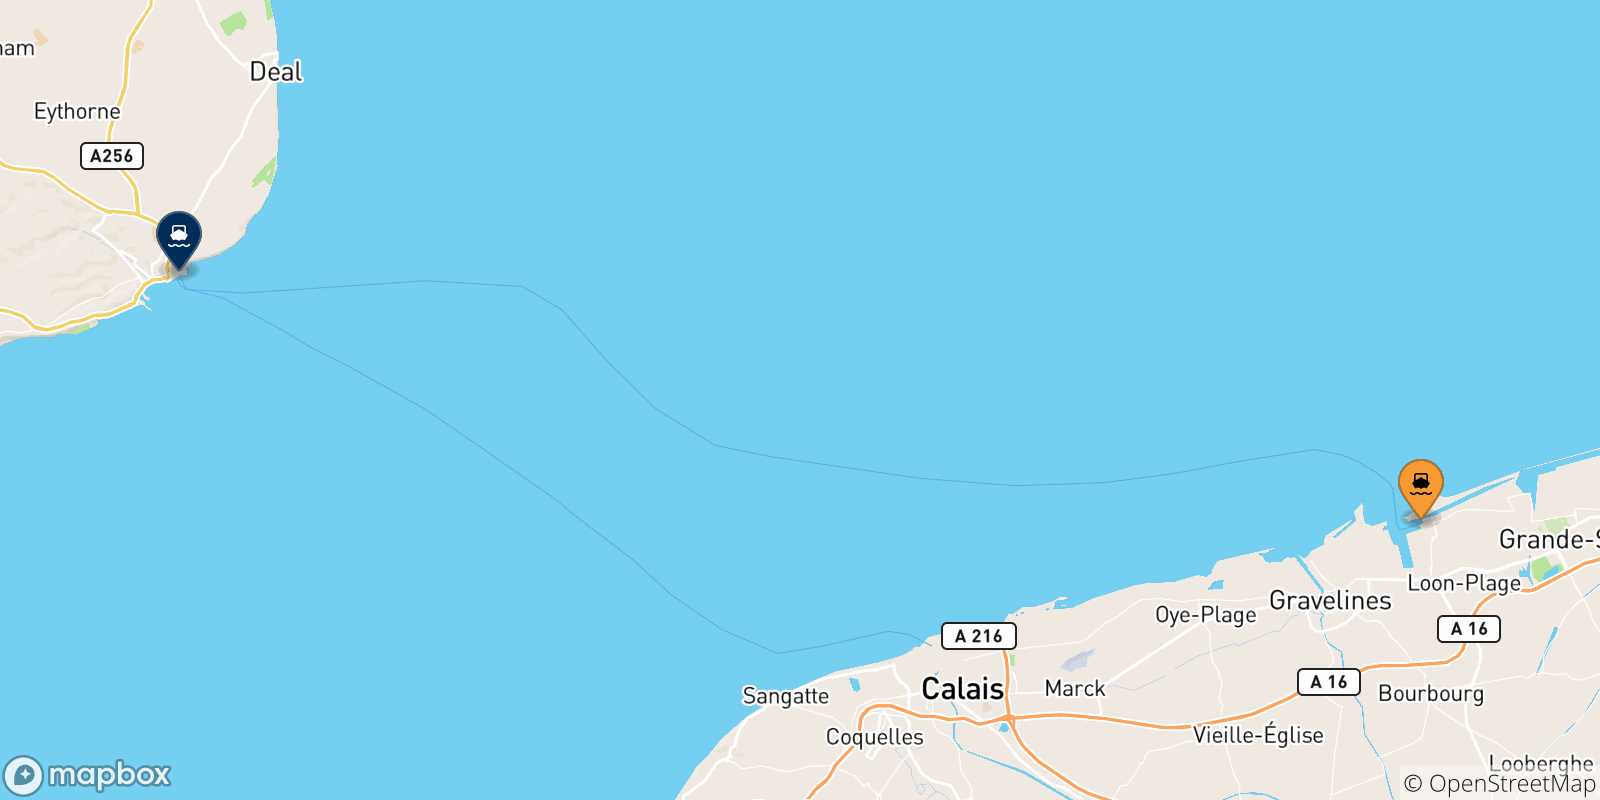 Mappa delle possibili rotte tra Dunkerque e il Regno Unito